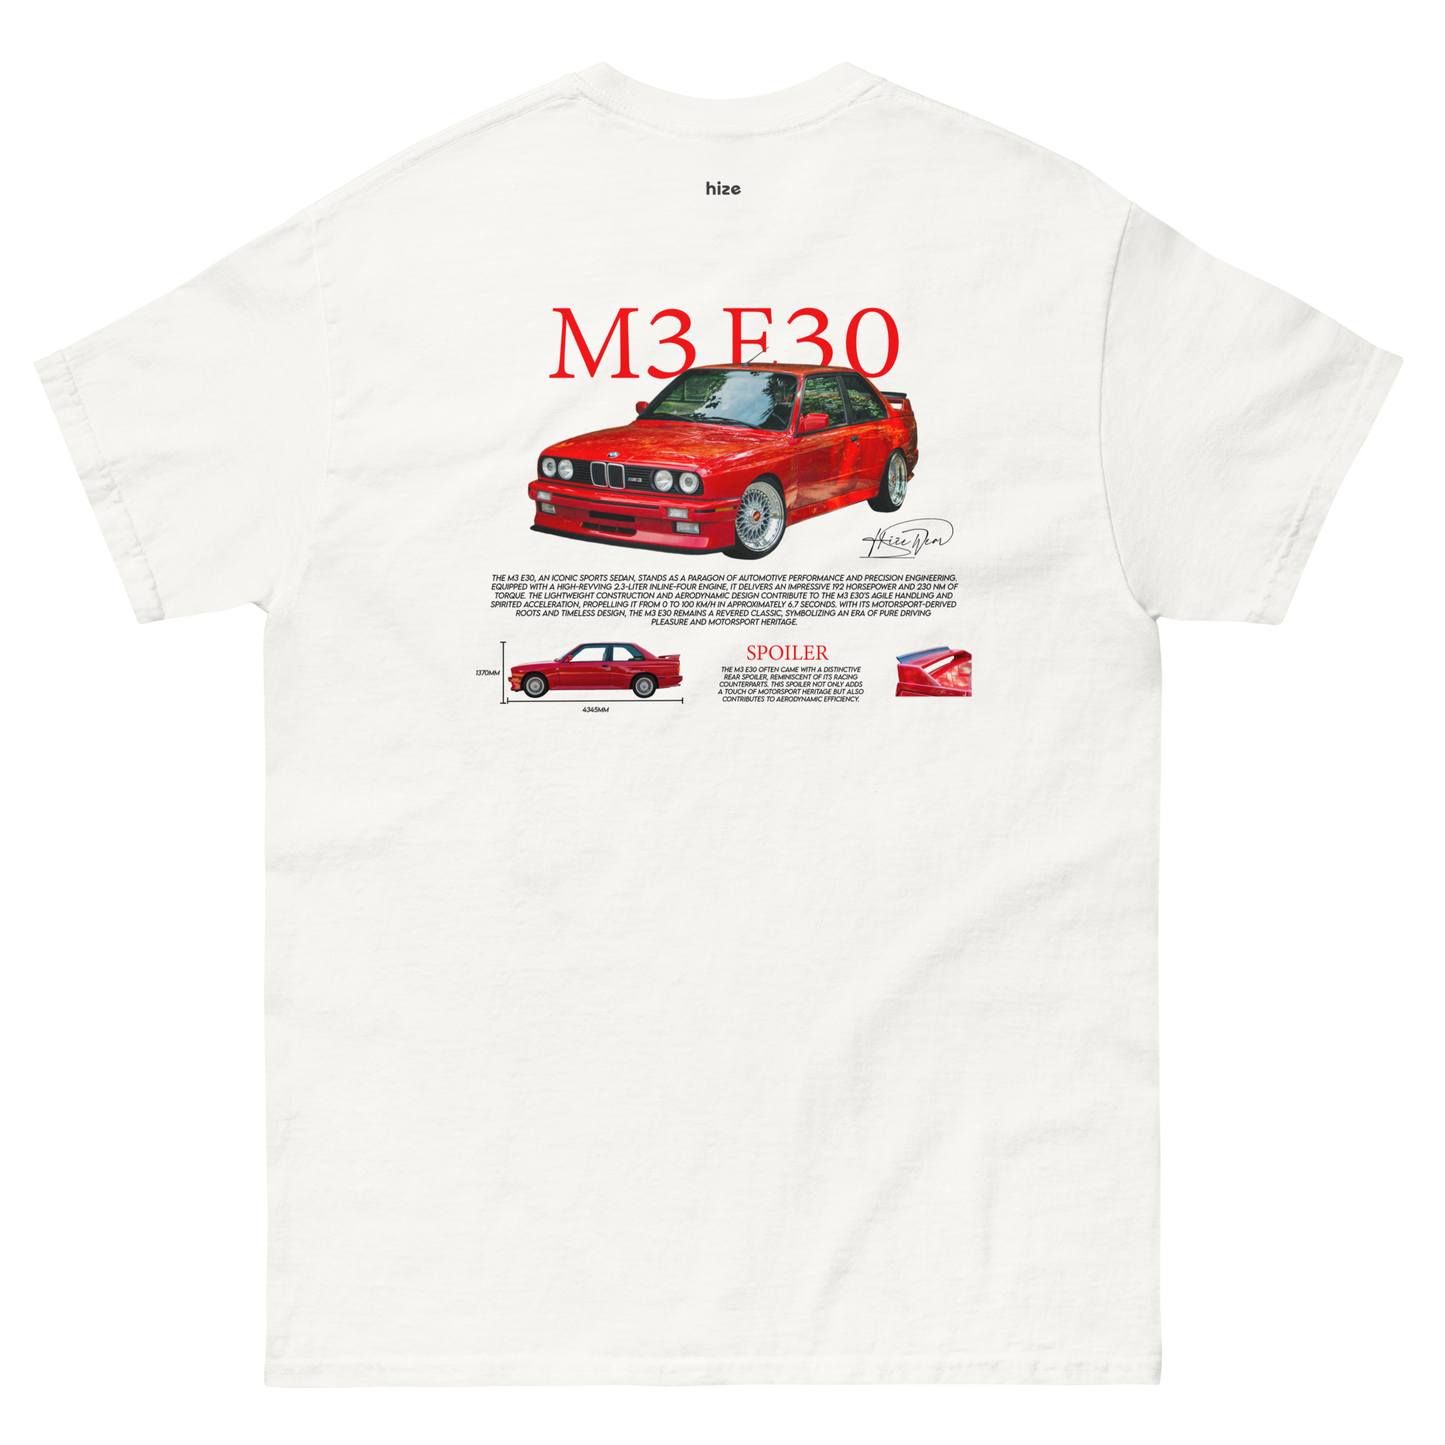 BMW M3 E30 T-shirt - White Back View